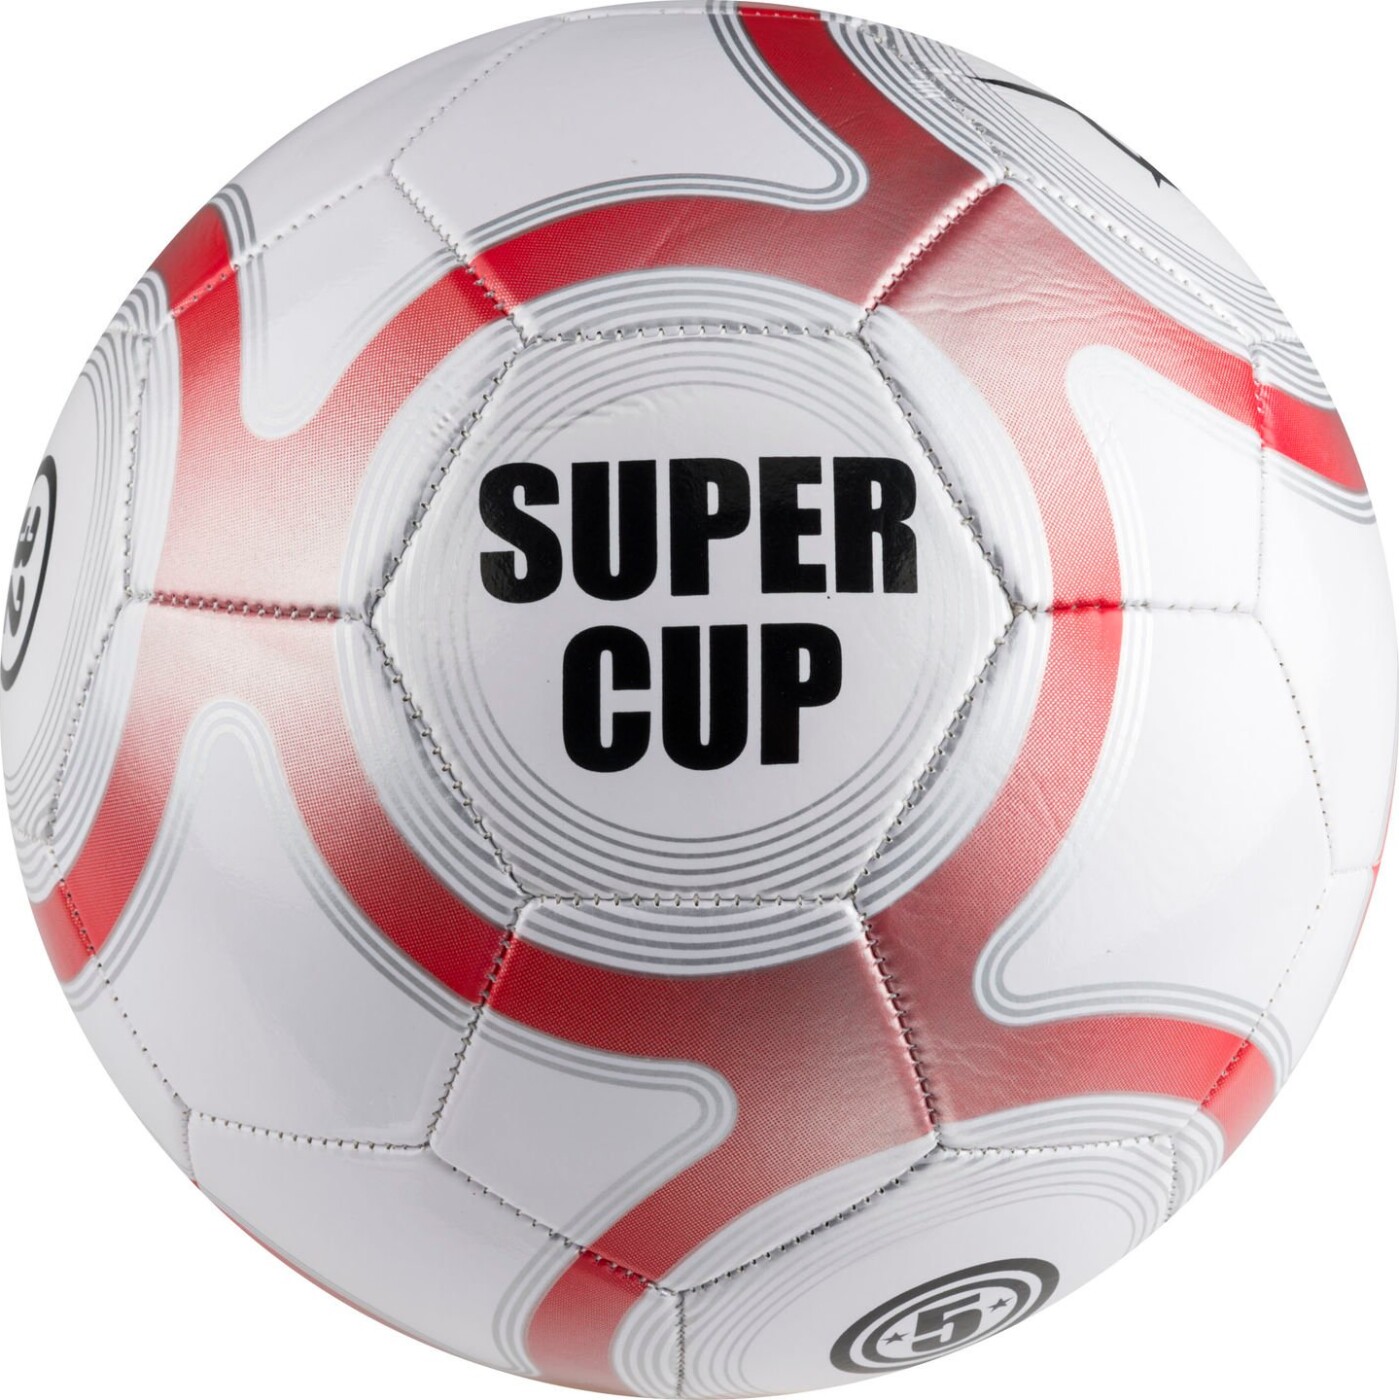 Fodbold - Super Cup - Str. 5